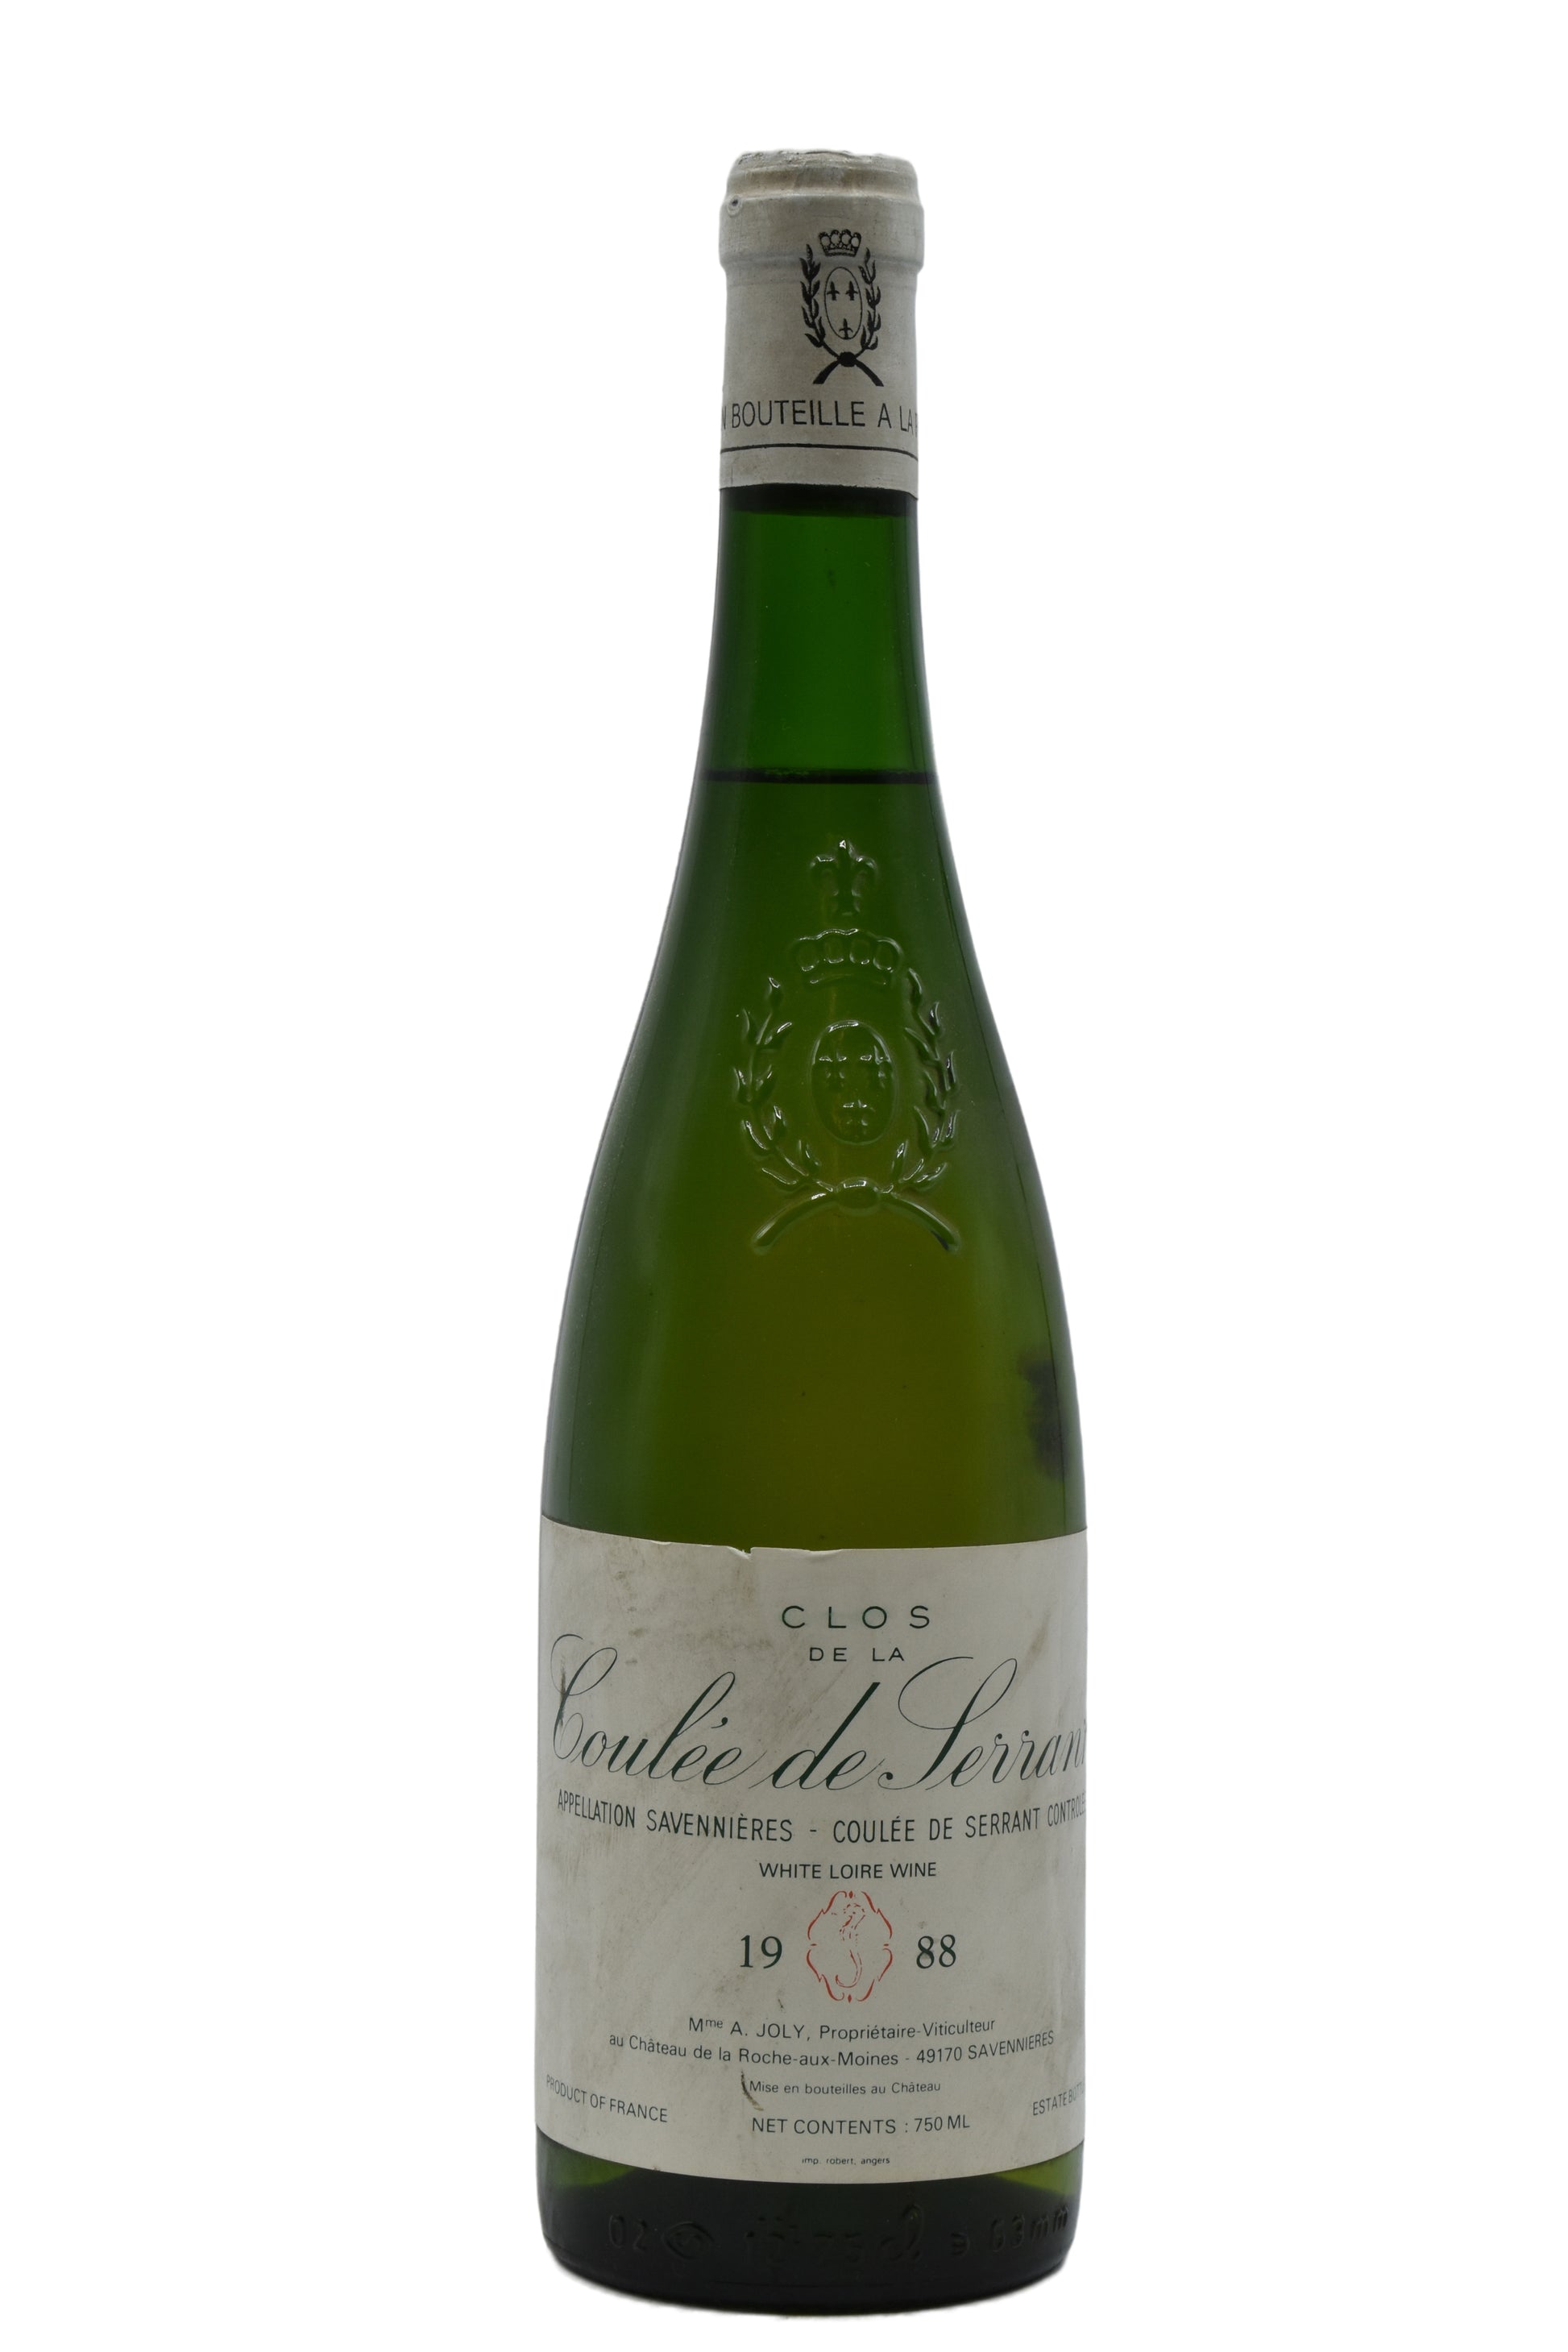 1988 Nicolas Joly Savennieres Clos de la Coulee de Serrant 750ml - Walker Wine Co.